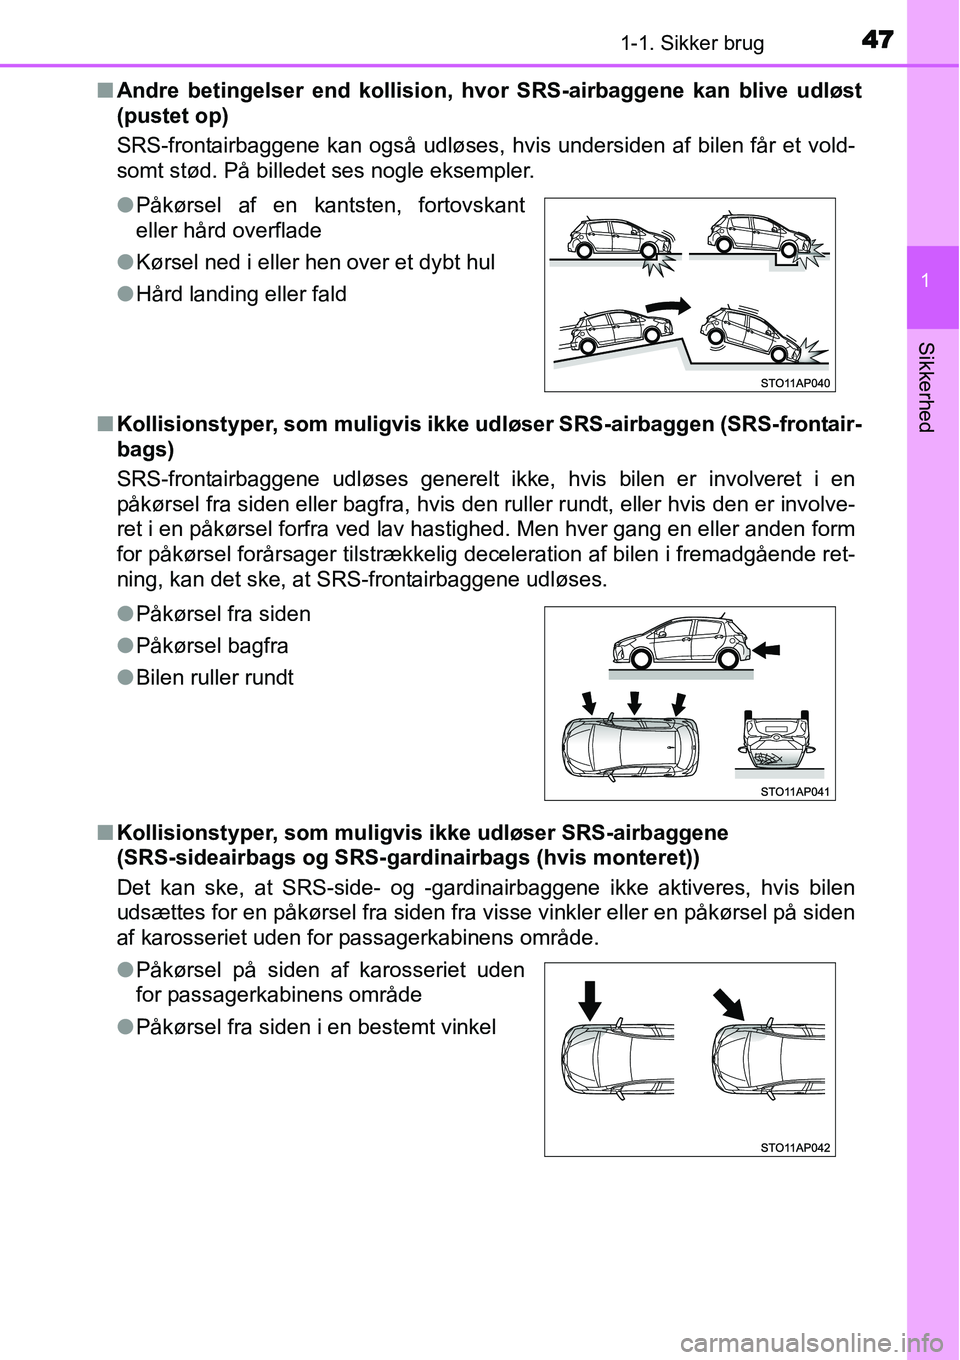 TOYOTA YARIS HYBRID 2014  Brugsanvisning (in Danish) 471-1. Sikker brug
1
Sikkerhed
■Andre betingelser end kollision, hvor SRS-airbaggene kan blive udløst
(pustet op)
SRS-frontairbaggene kan også udløses, hvis undersiden af bilen får et vold-
somt